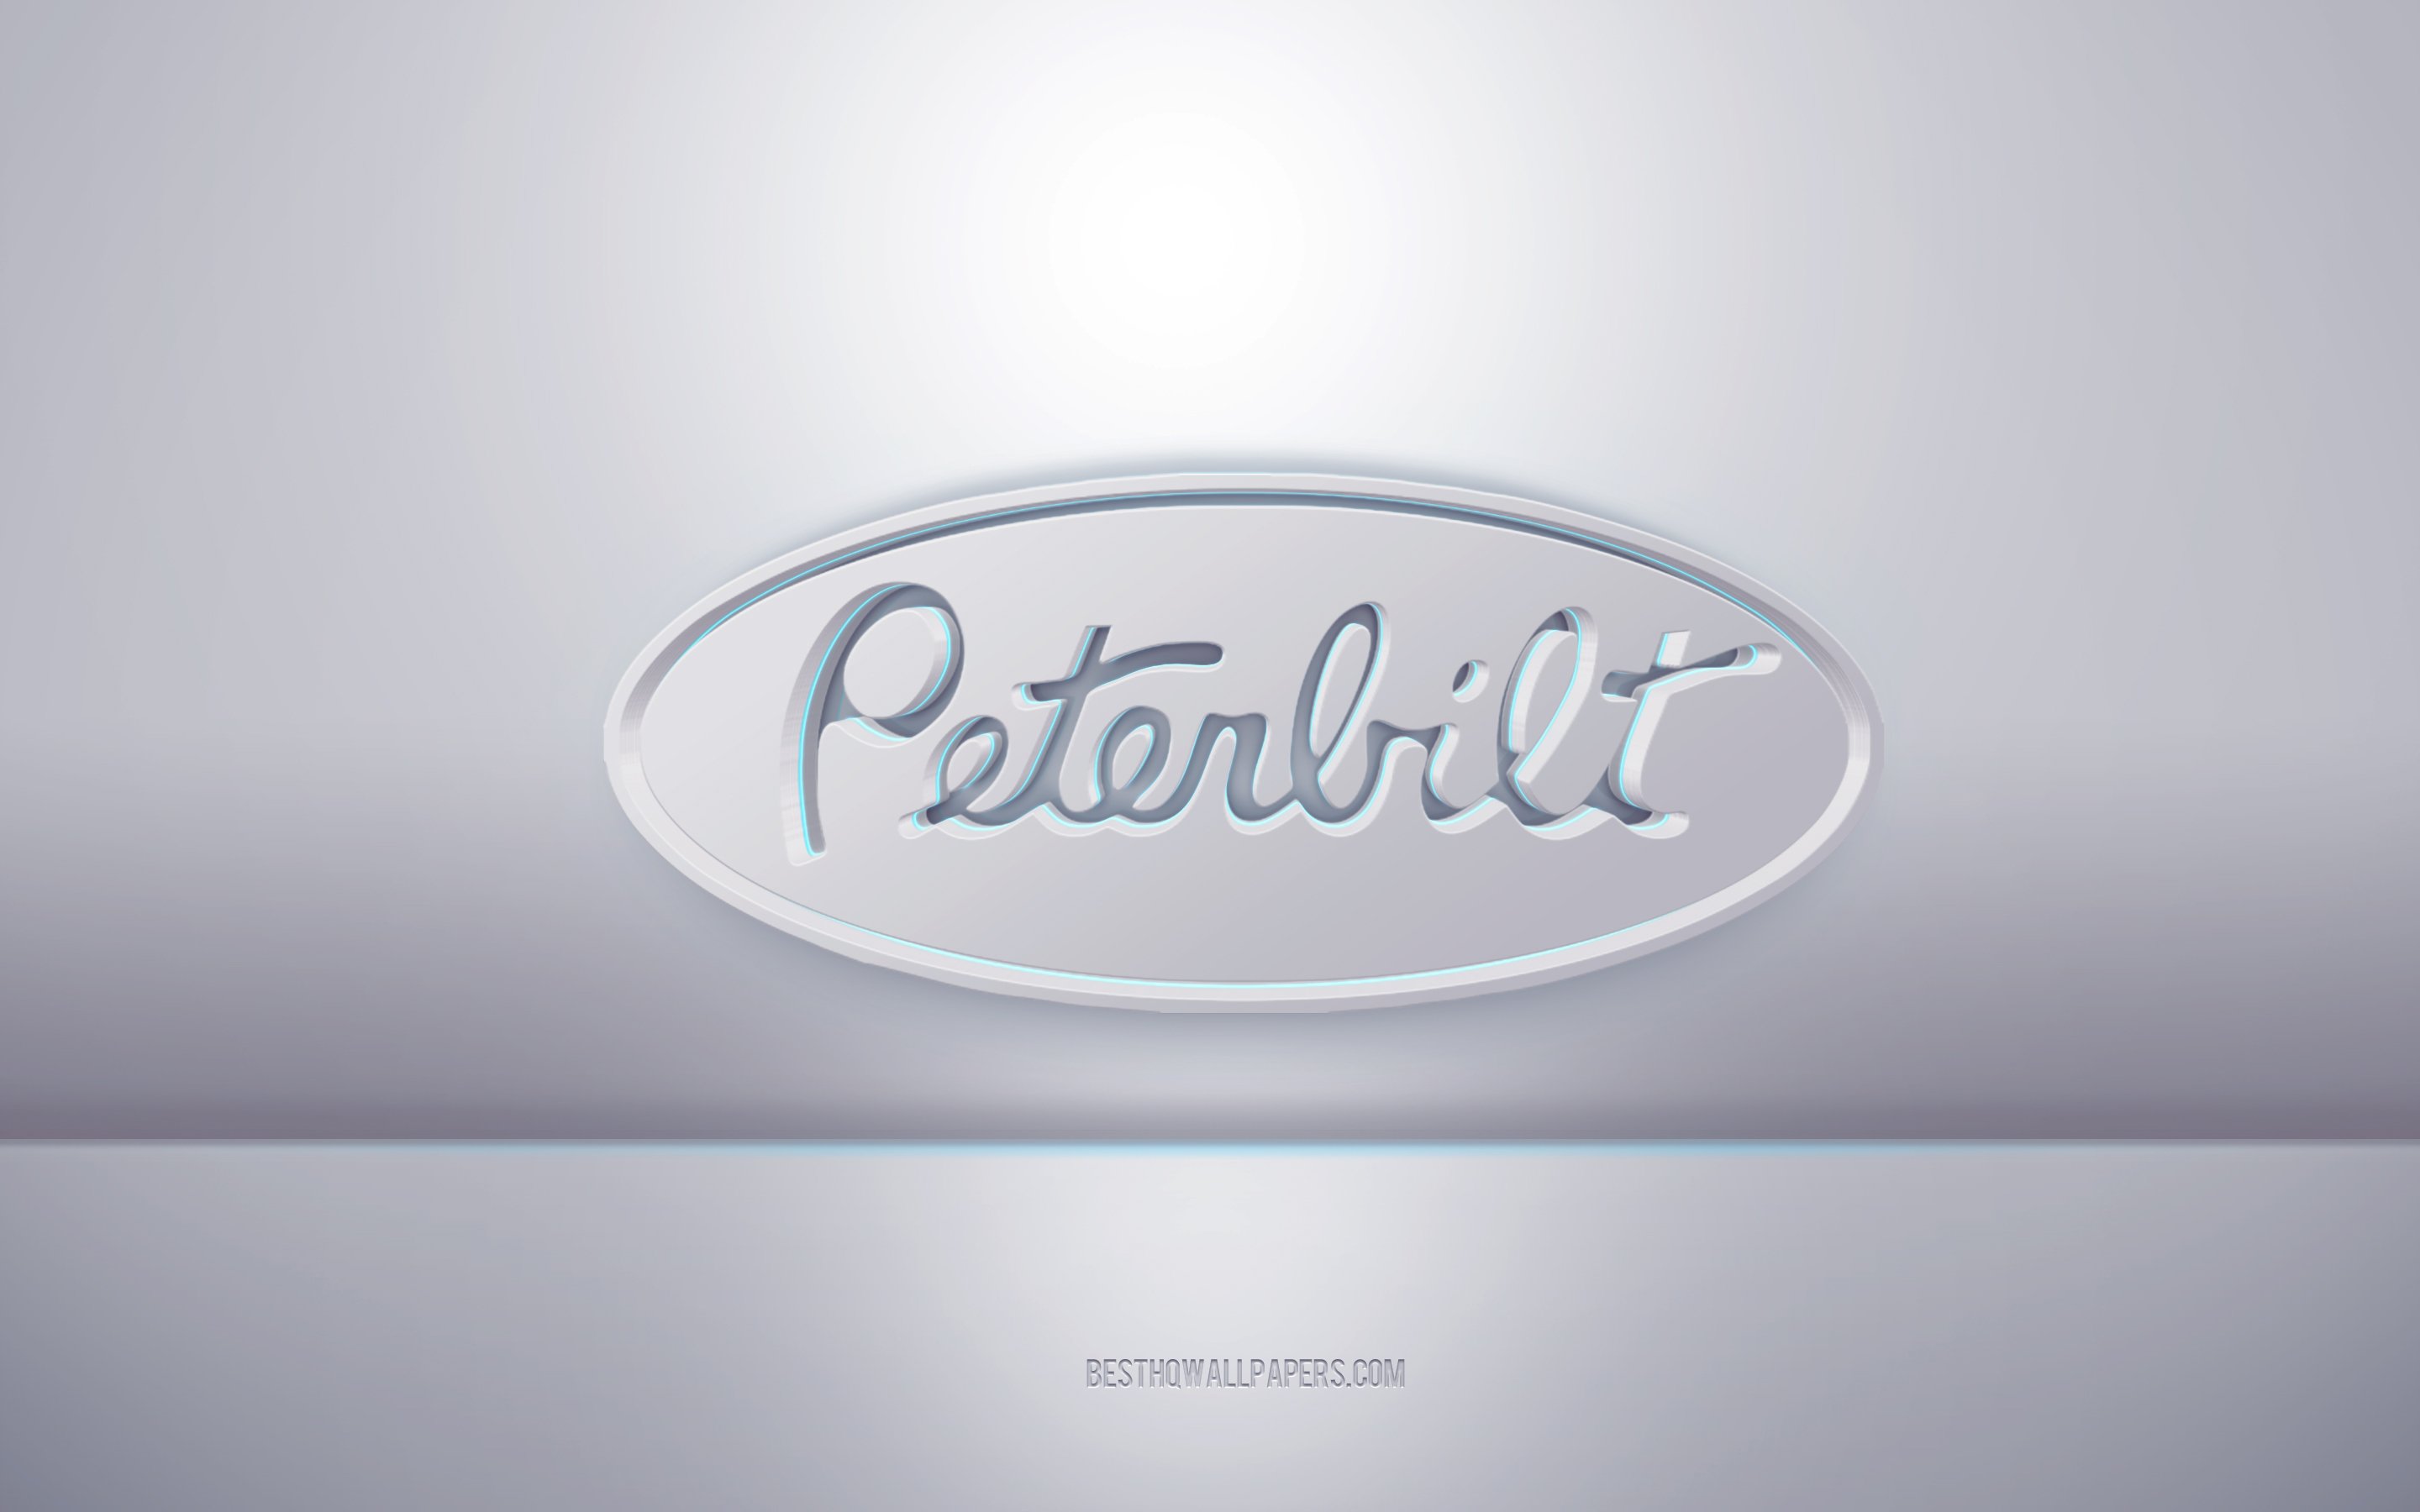 Download wallpaper Peterbilt 3D white logo, gray background, Peterbilt logo, creative 3D art, Peterbilt, 3D emblem for desktop with resolution 2880x1800. High Quality HD picture wallpaper